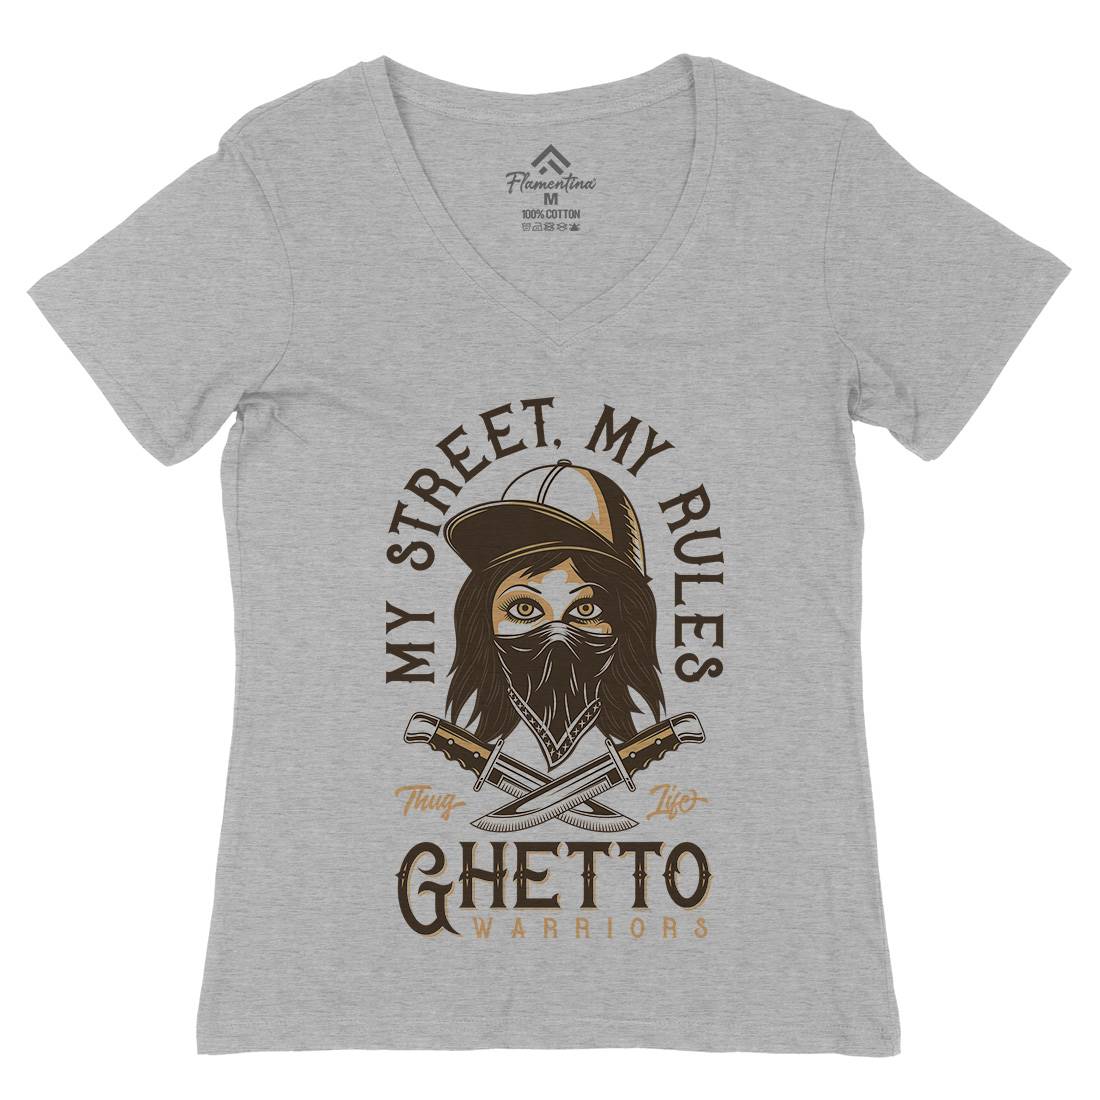 Ghetto Warriors Womens Organic V-Neck T-Shirt Retro D938